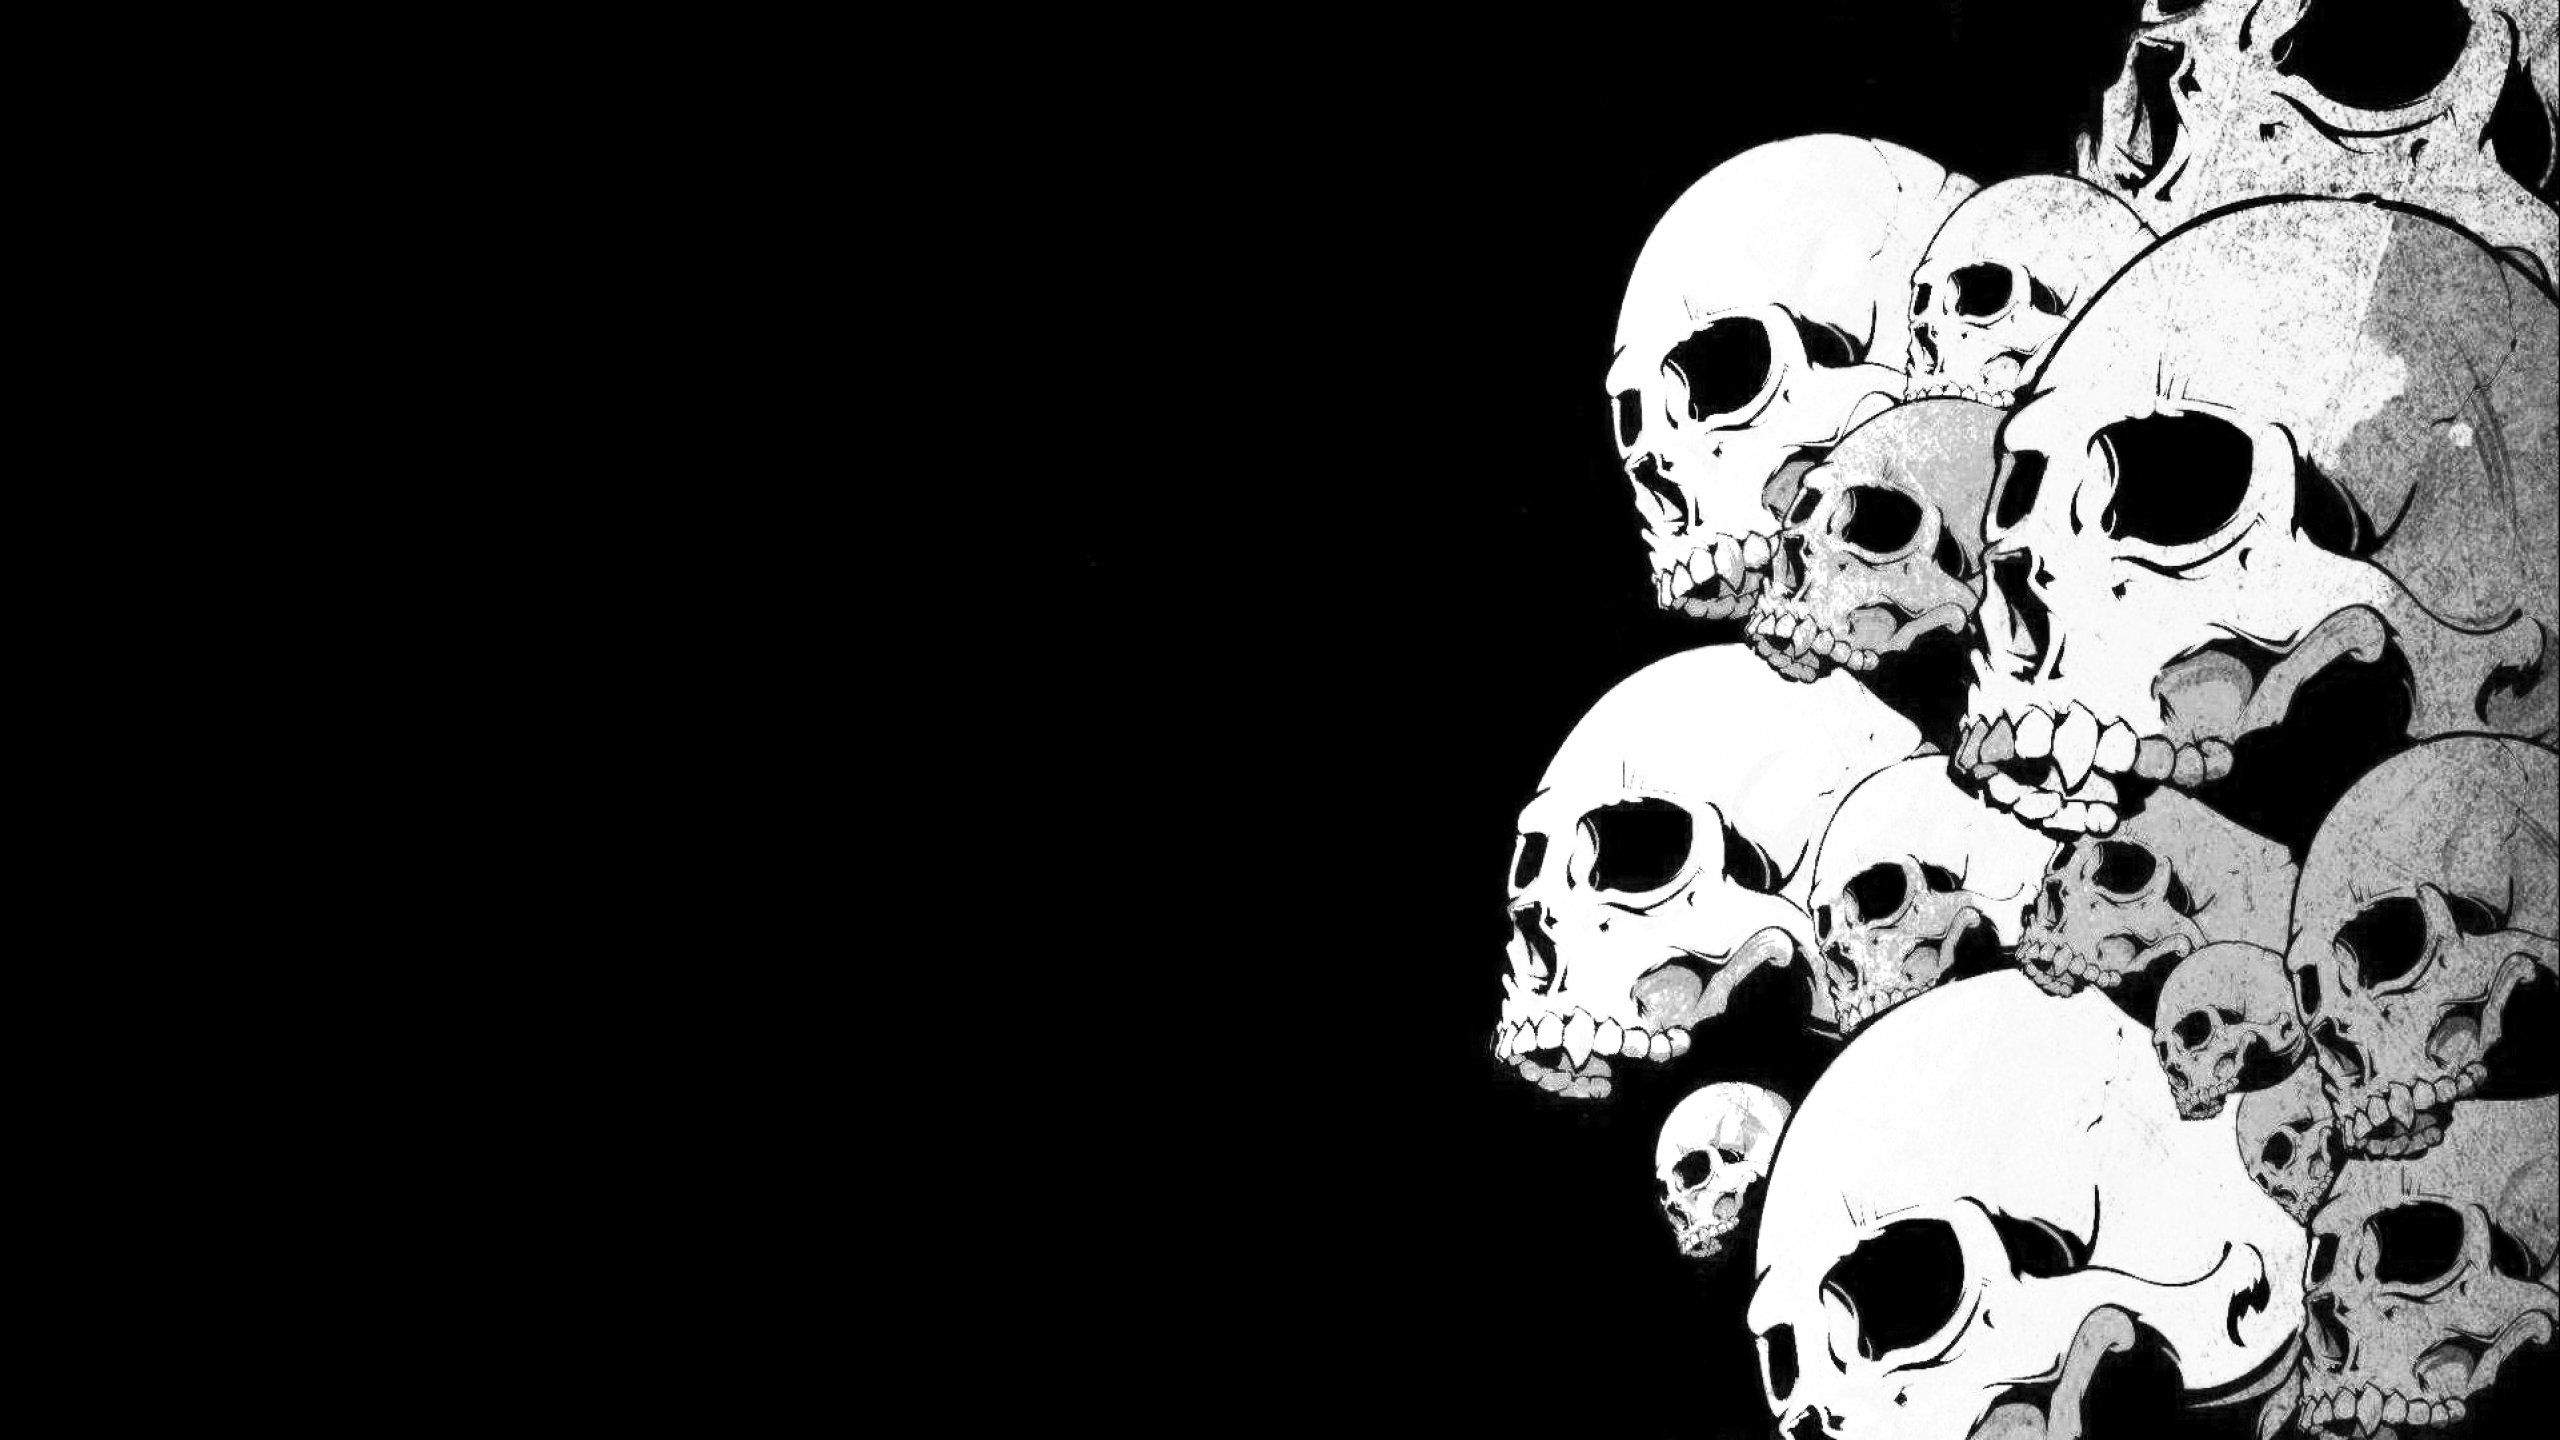 A black and white image of skulls - Horror, skull